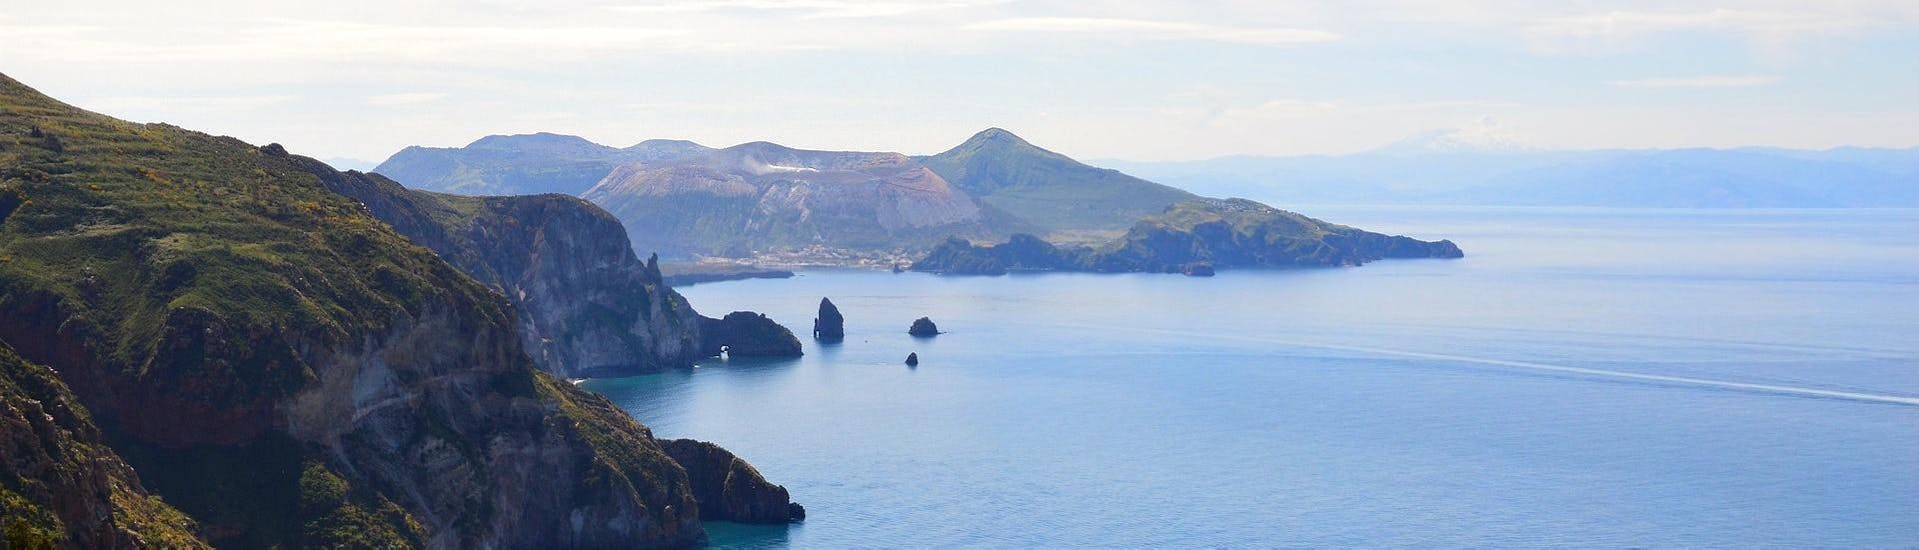 Vista panoramica dell'isola di Lipari.